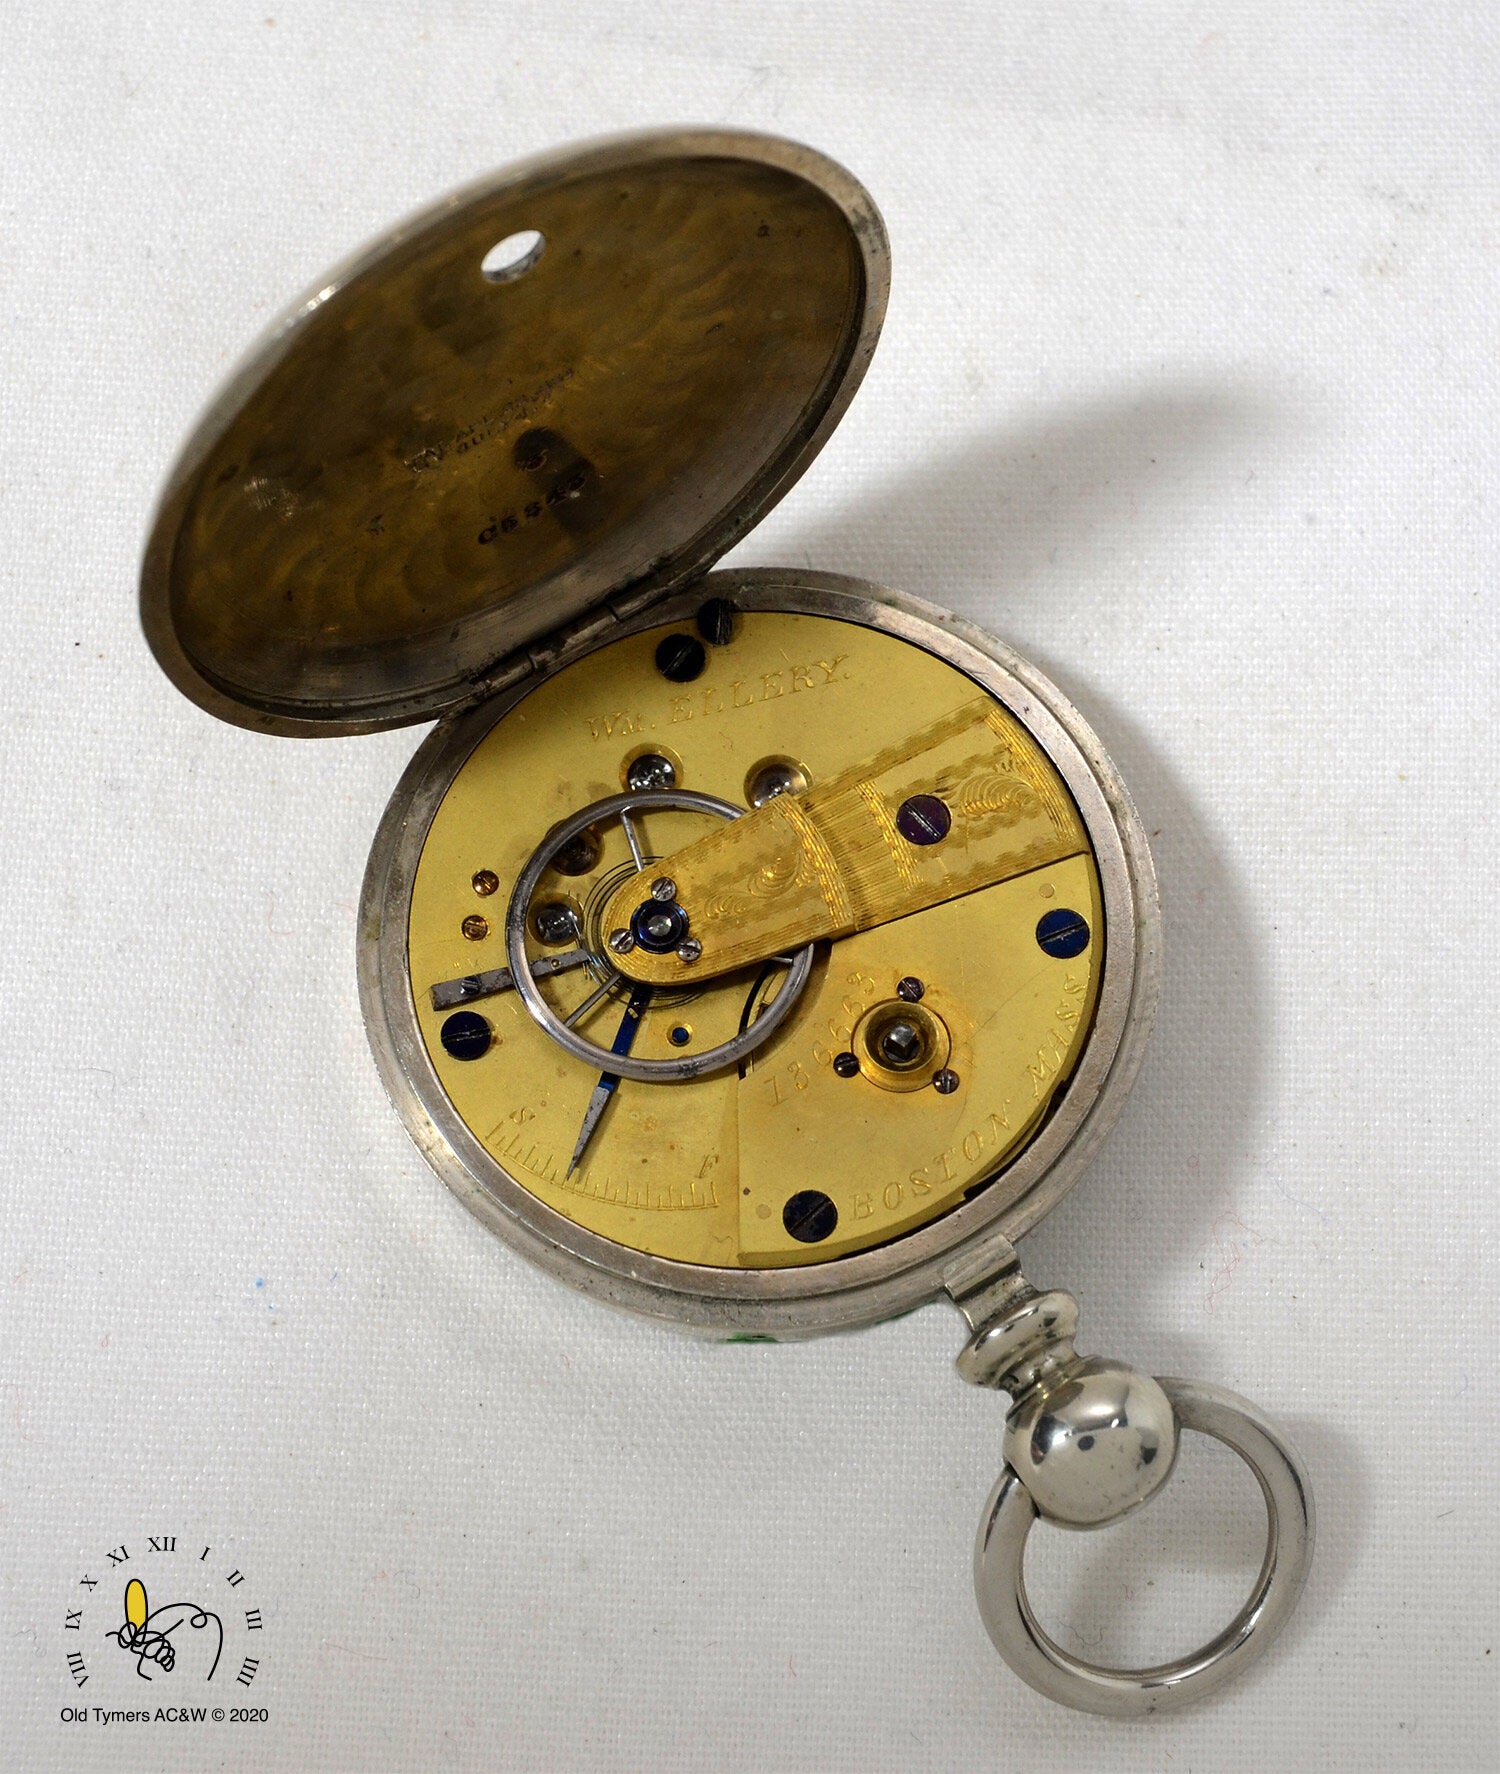 Waltham 1857 Wm Ellery Pocket Watch